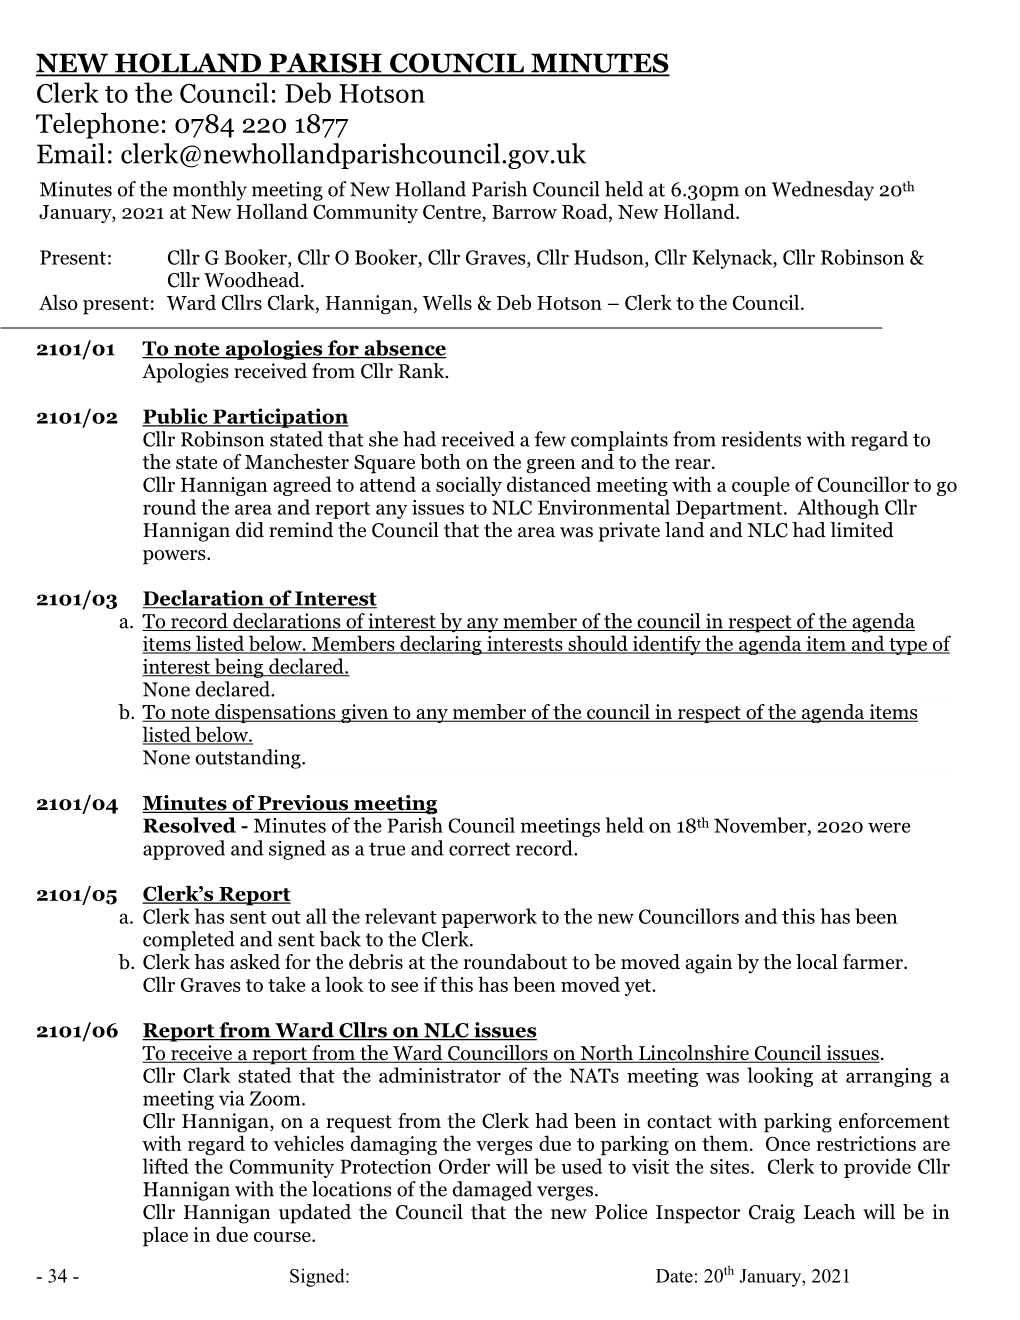 New Holland Parish Council Minutes